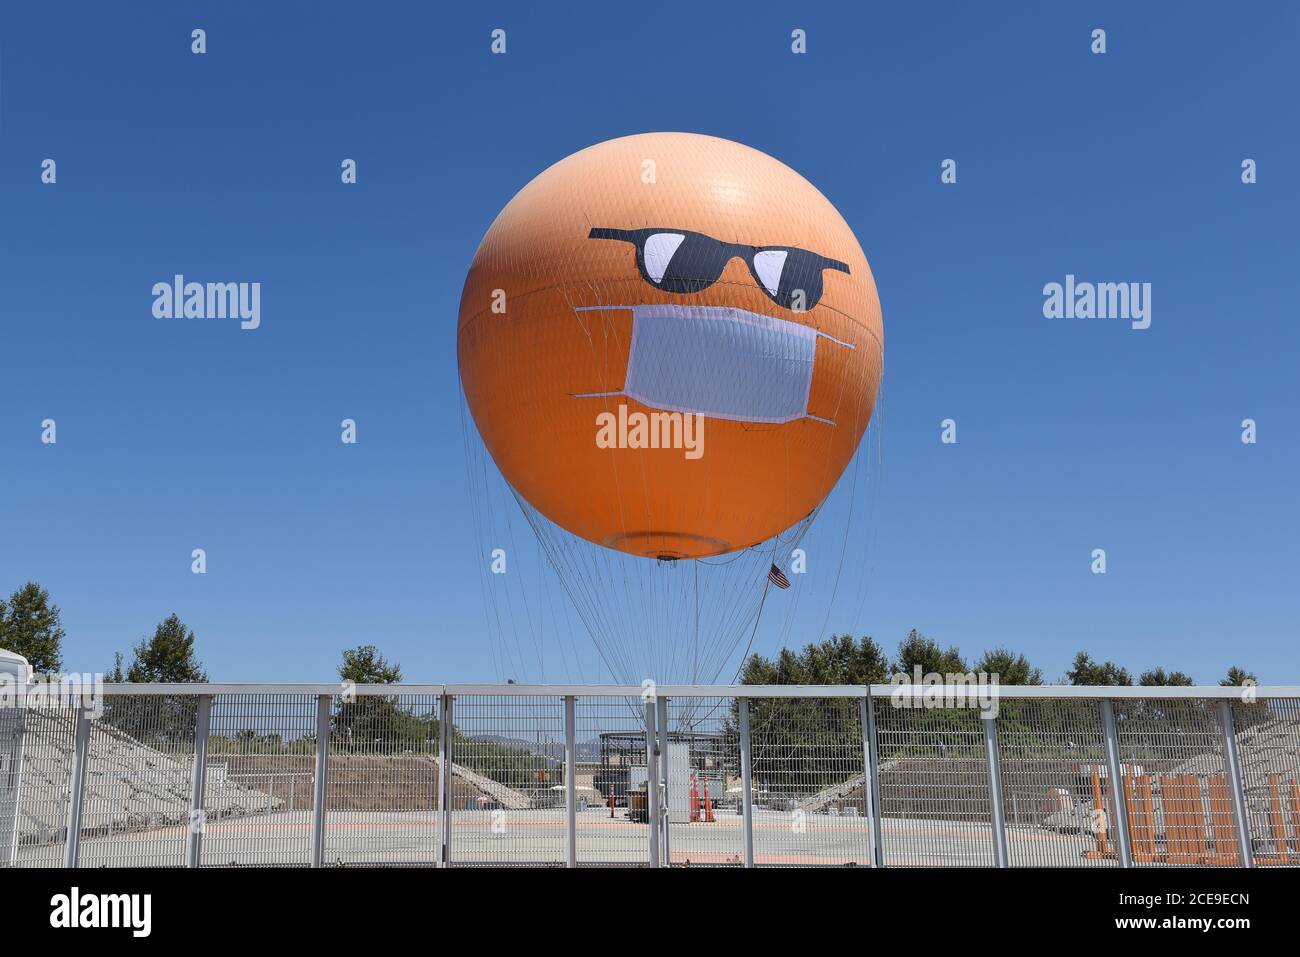 IRVINE, CALIFORNIE - 30 AOÛT 2020 : le grand parc de l'Orange County Balloon sport un masque COVID-19 et des lunettes de soleil pour rappeler aux visiteurs le besoin Banque D'Images